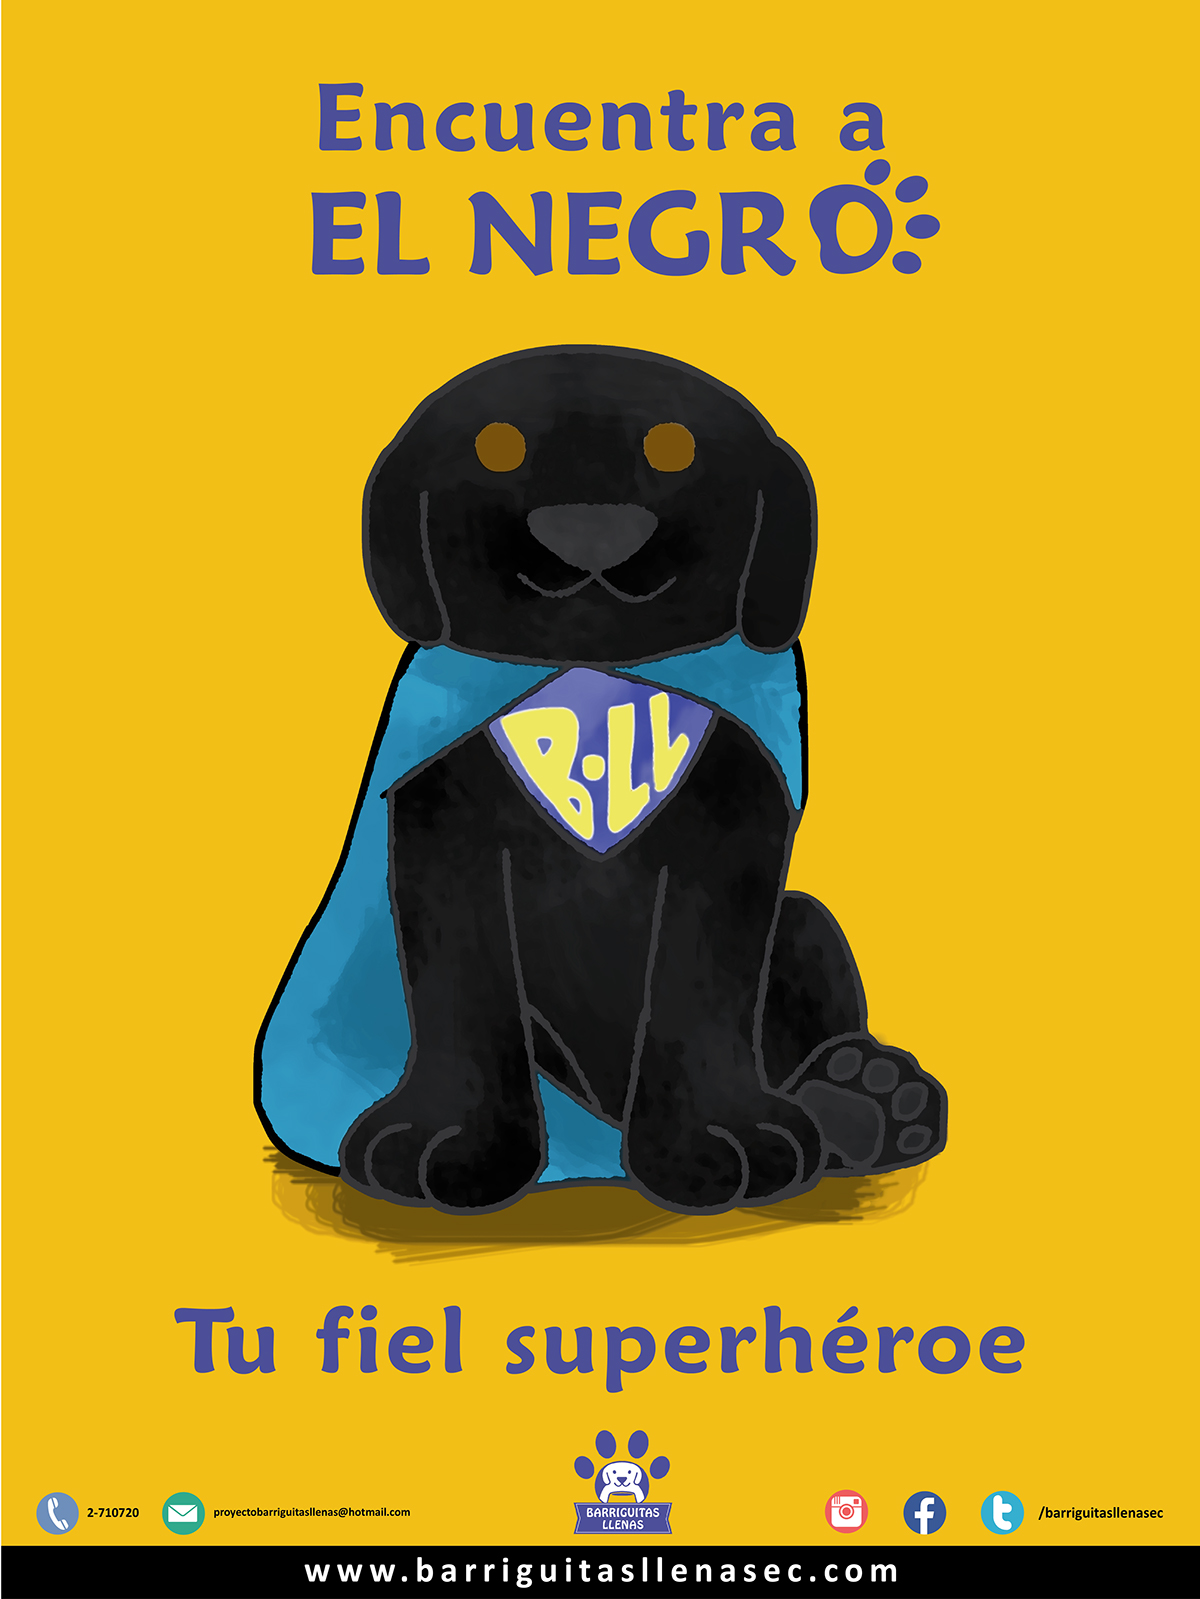 guayaquil Ecuador Campaña animales perro Barriguitas llenas adopción ilustracion